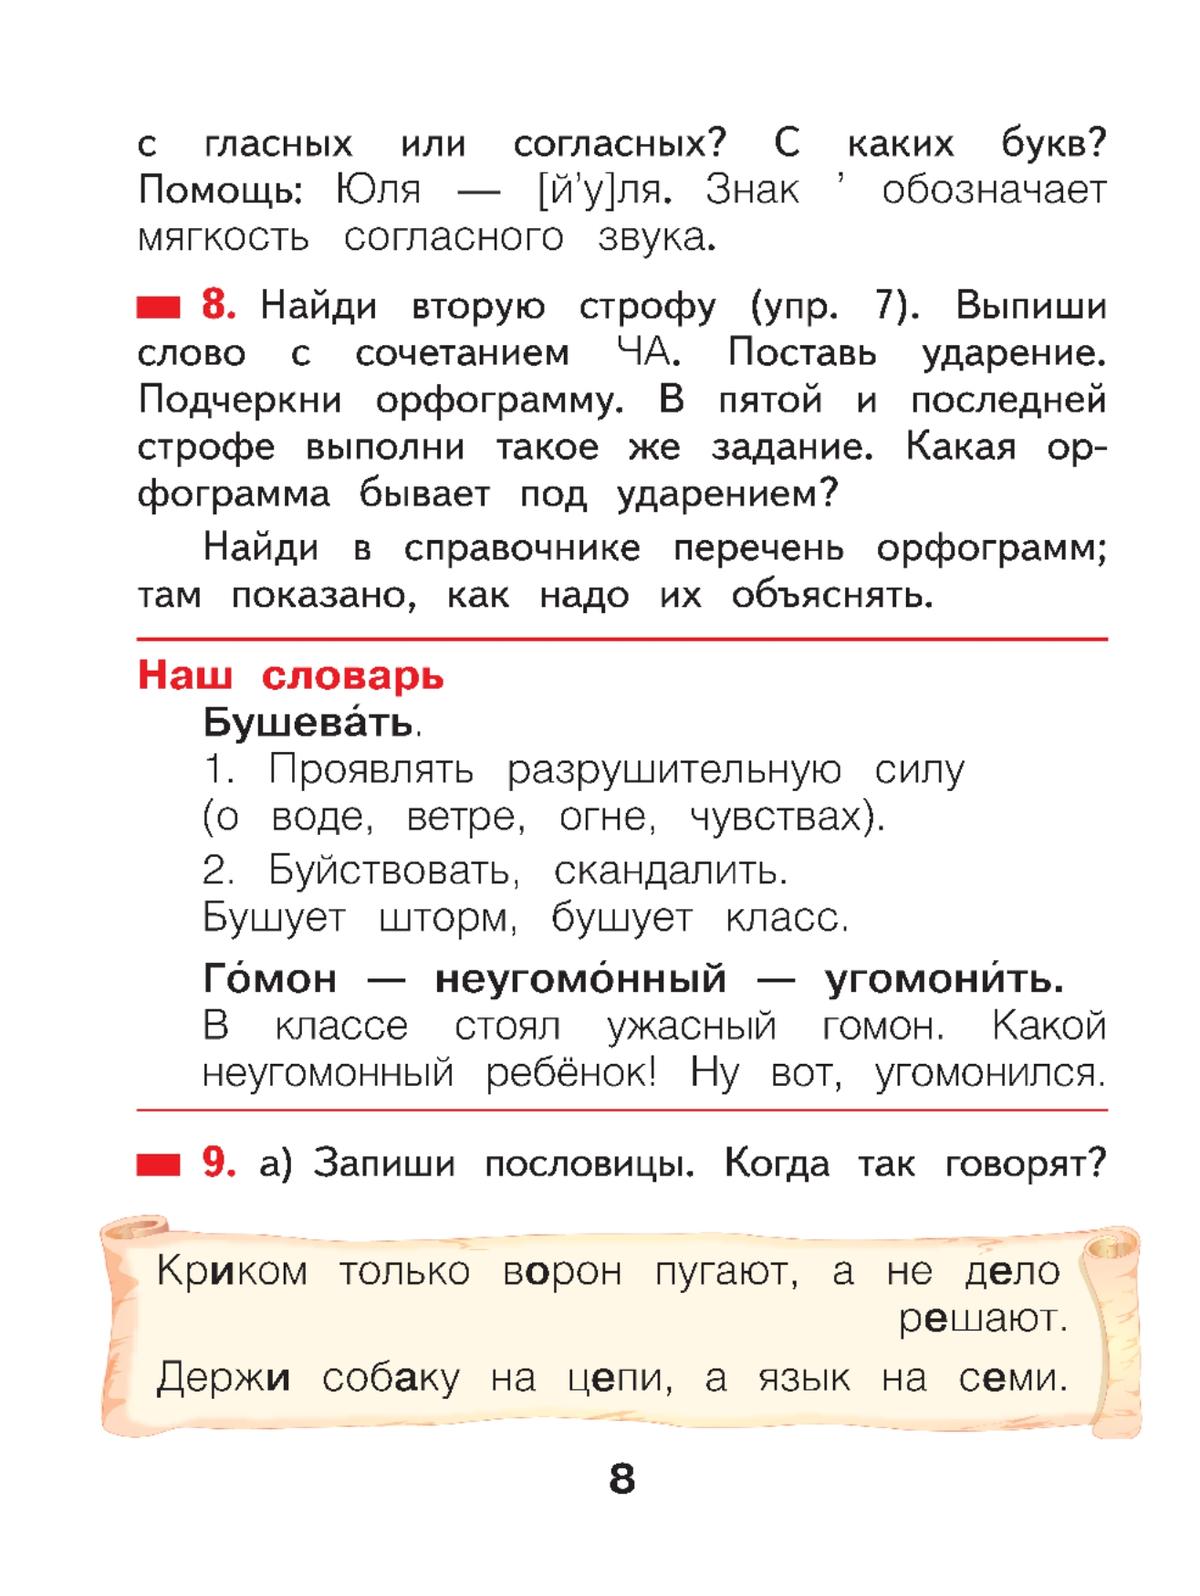 Русский язык. 2 класс. Учебное пособие. В 2 ч. Часть 1 2